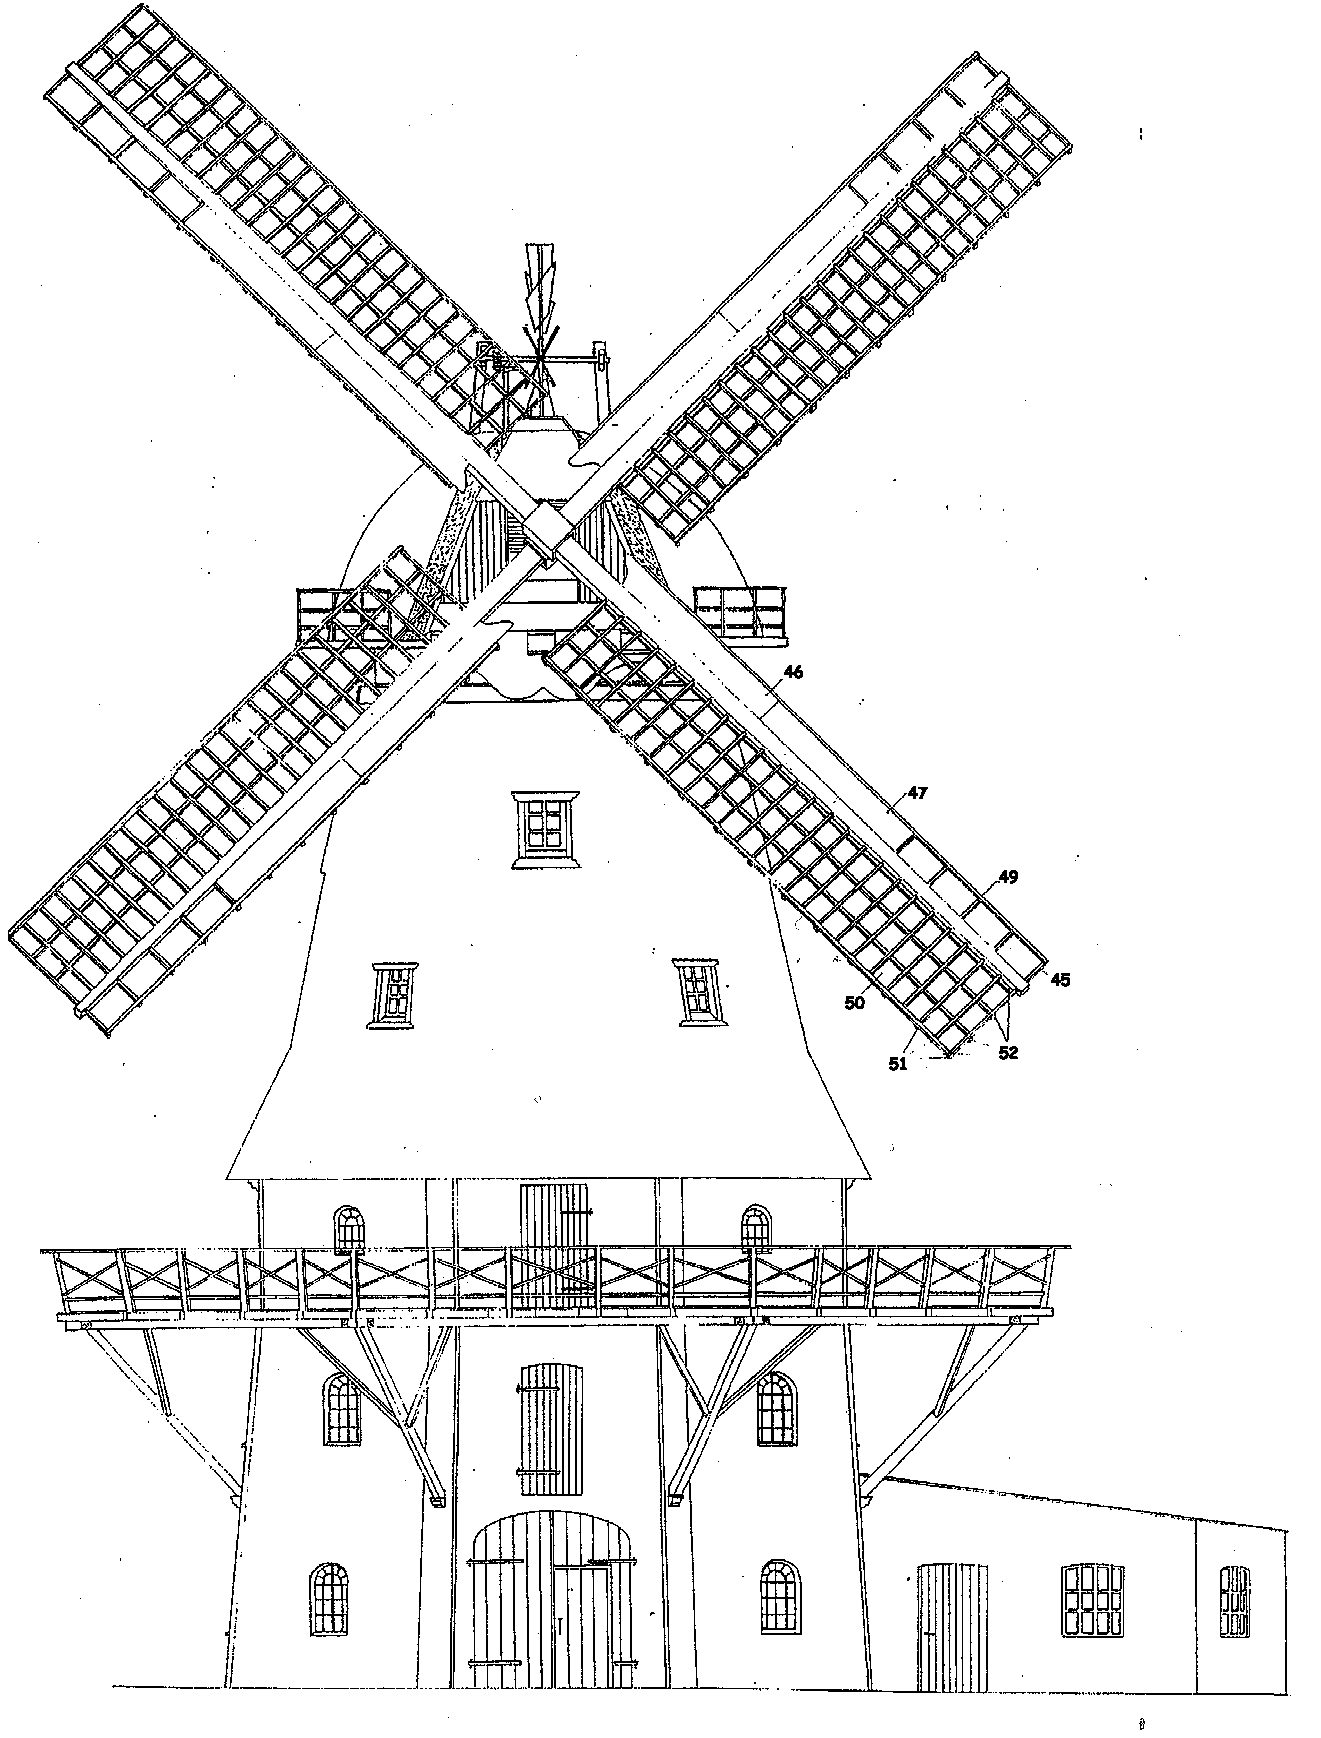 Frontalschema der Heiser Mühle, Copyright Koopmann 1997/1998